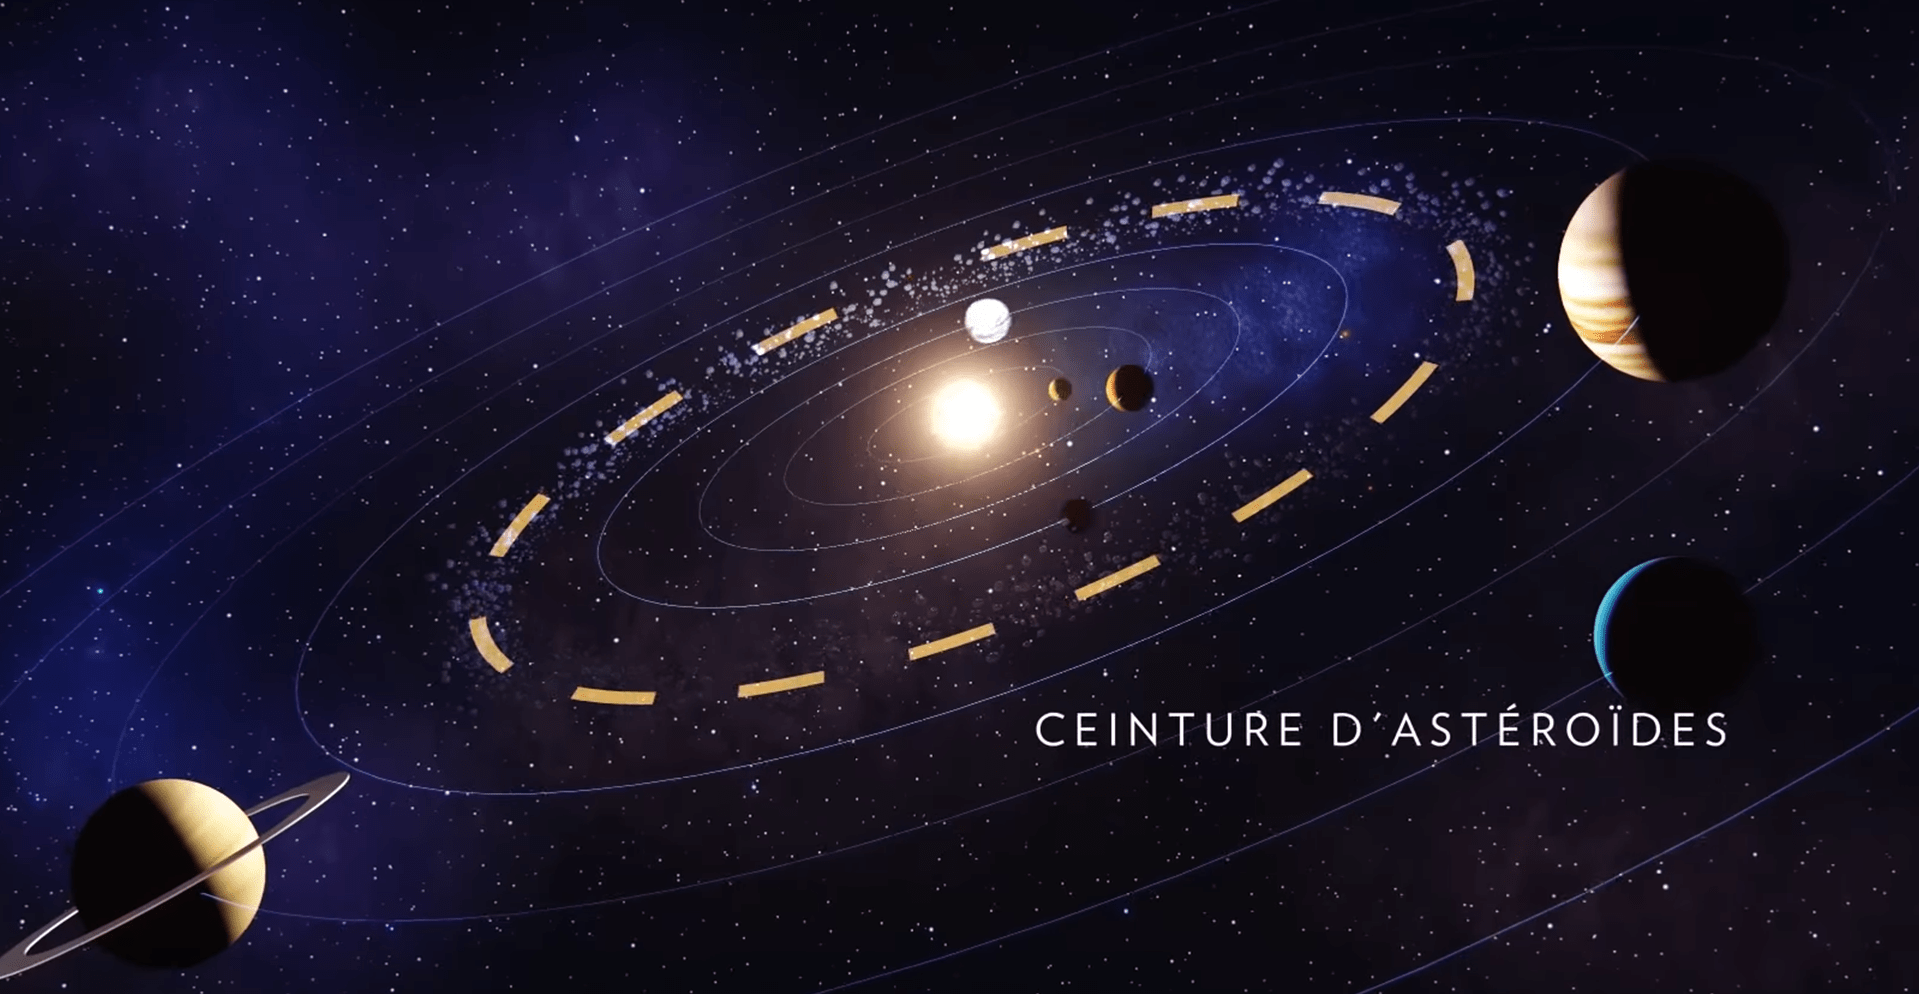 ceinture principale d'asteroides